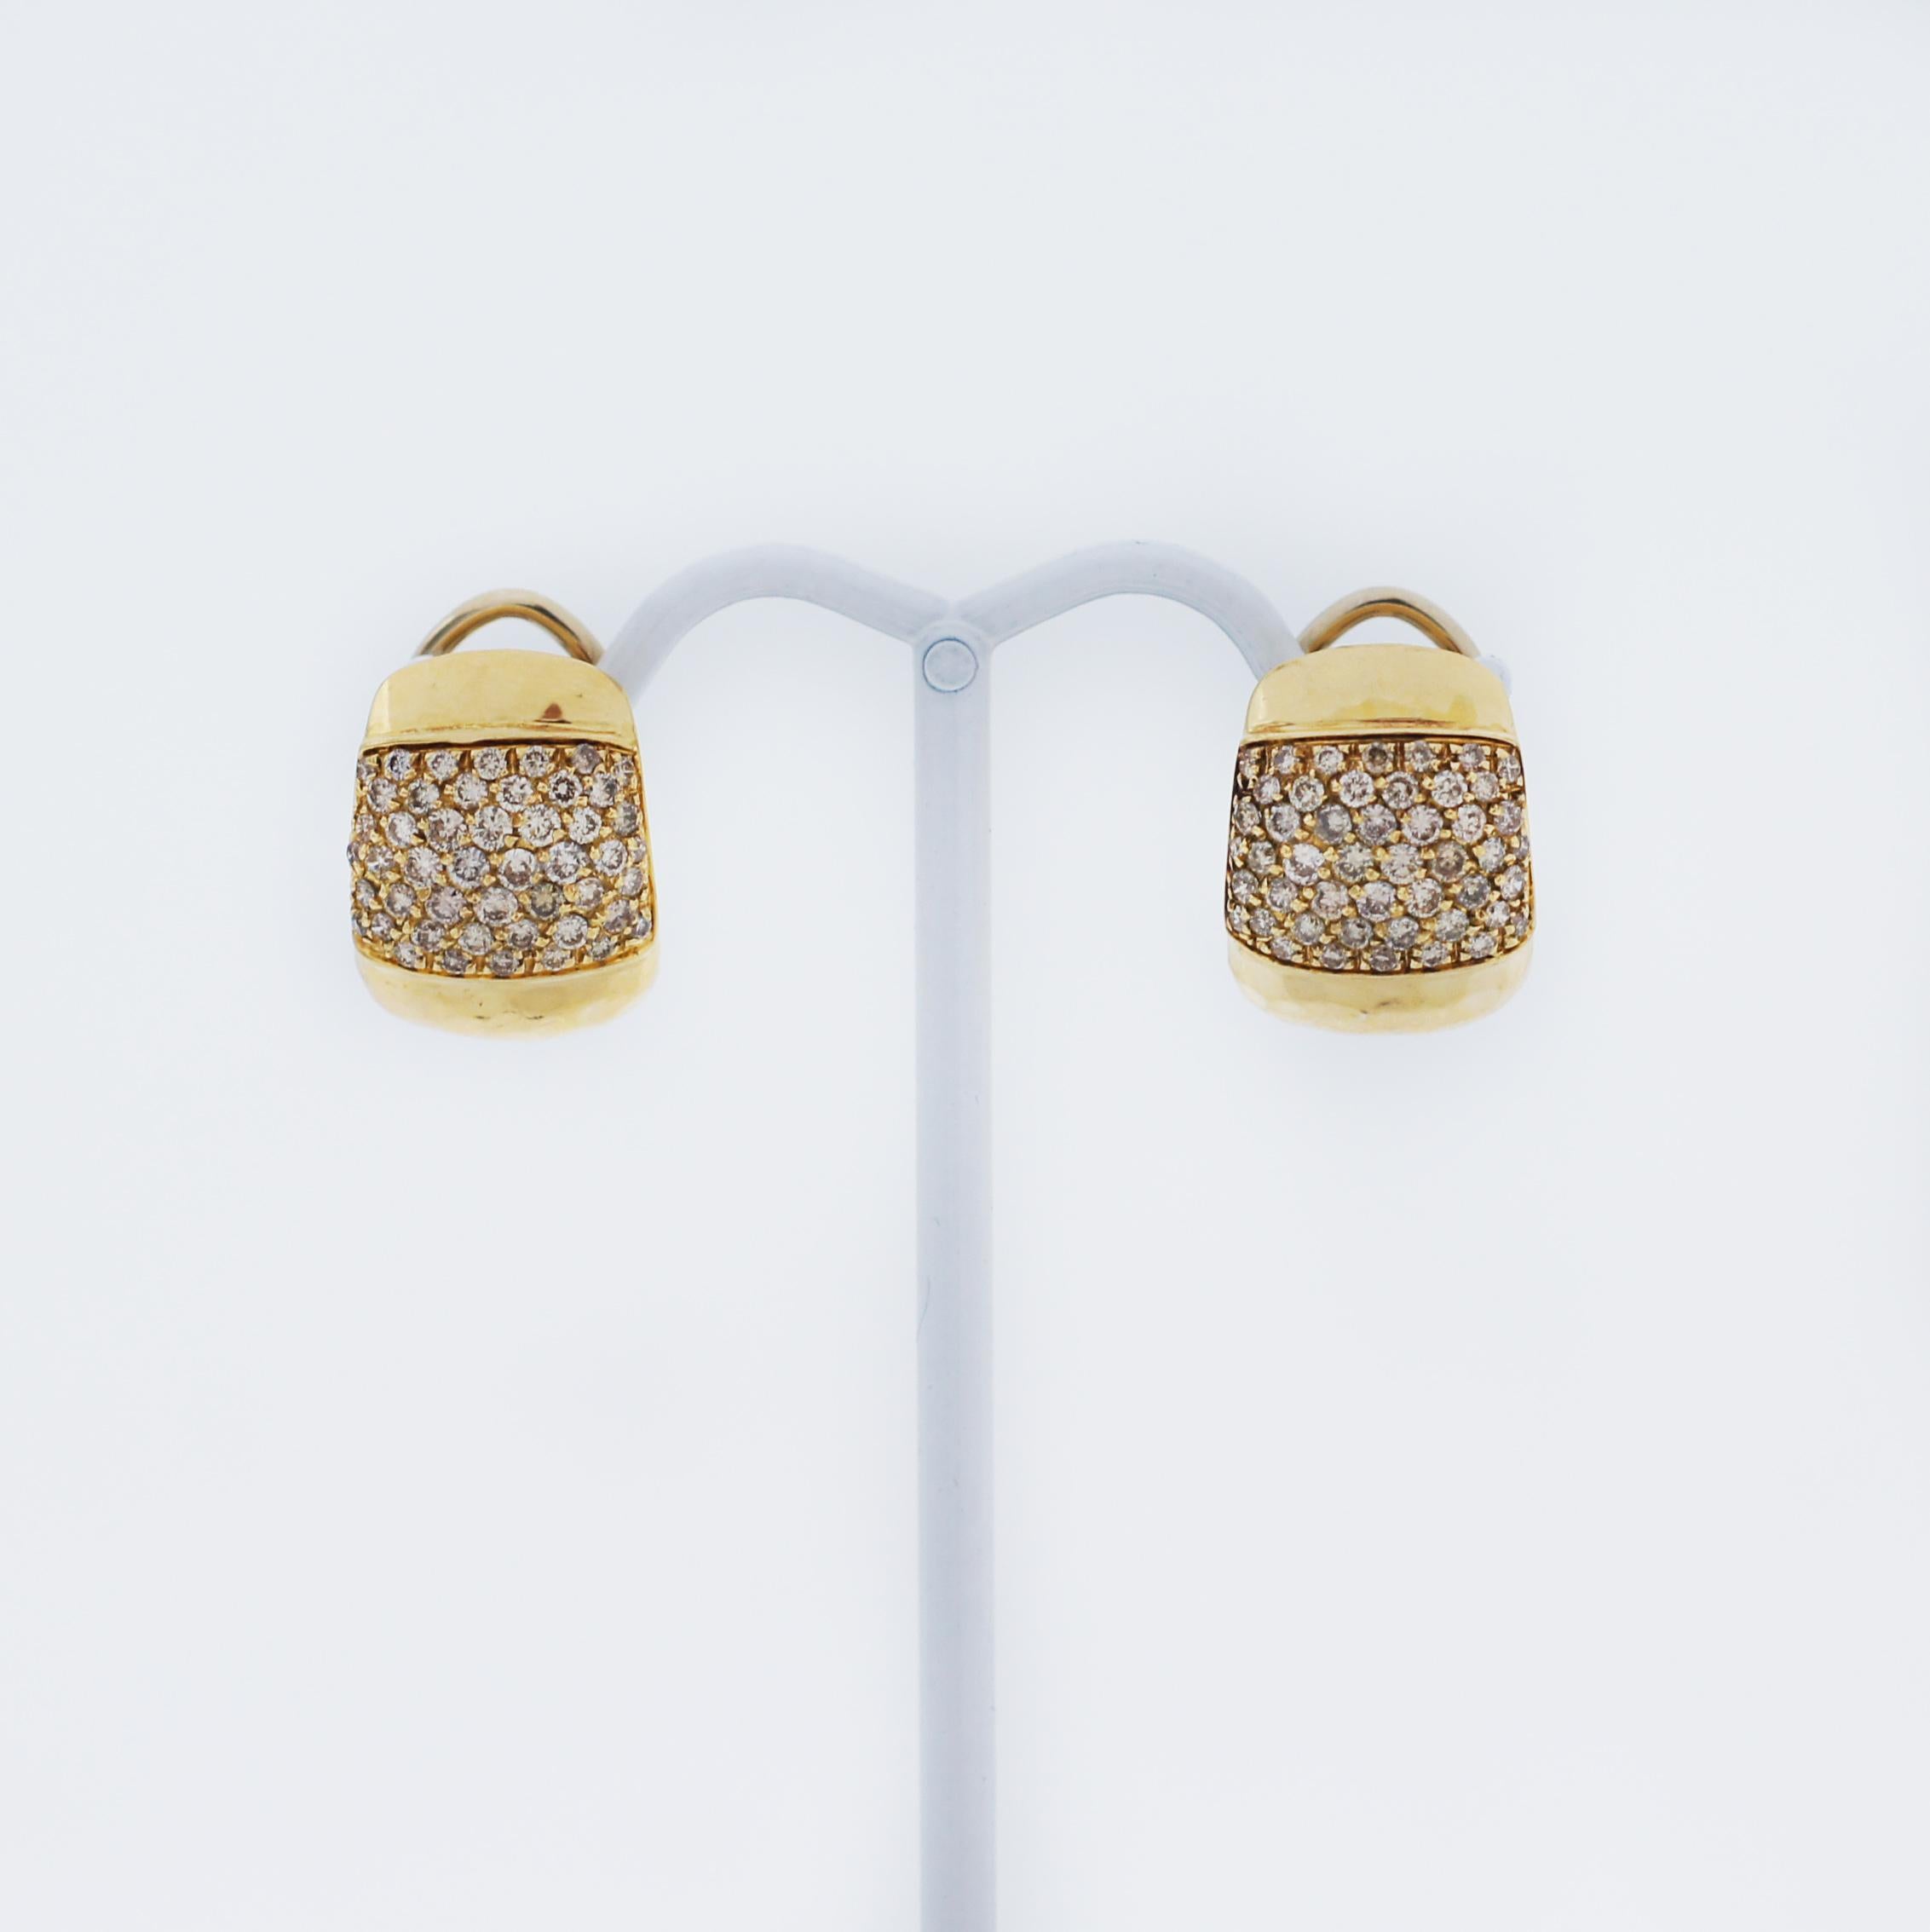 Boucles d'oreilles Roberto Coin composées d'une large monture effilée martelée à la main contenant des diamants sertis en pavé.
de la collection Martellato.
Les boucles d'oreilles portent le traditionnel Rubis encastré de Roberto Coin, la marque